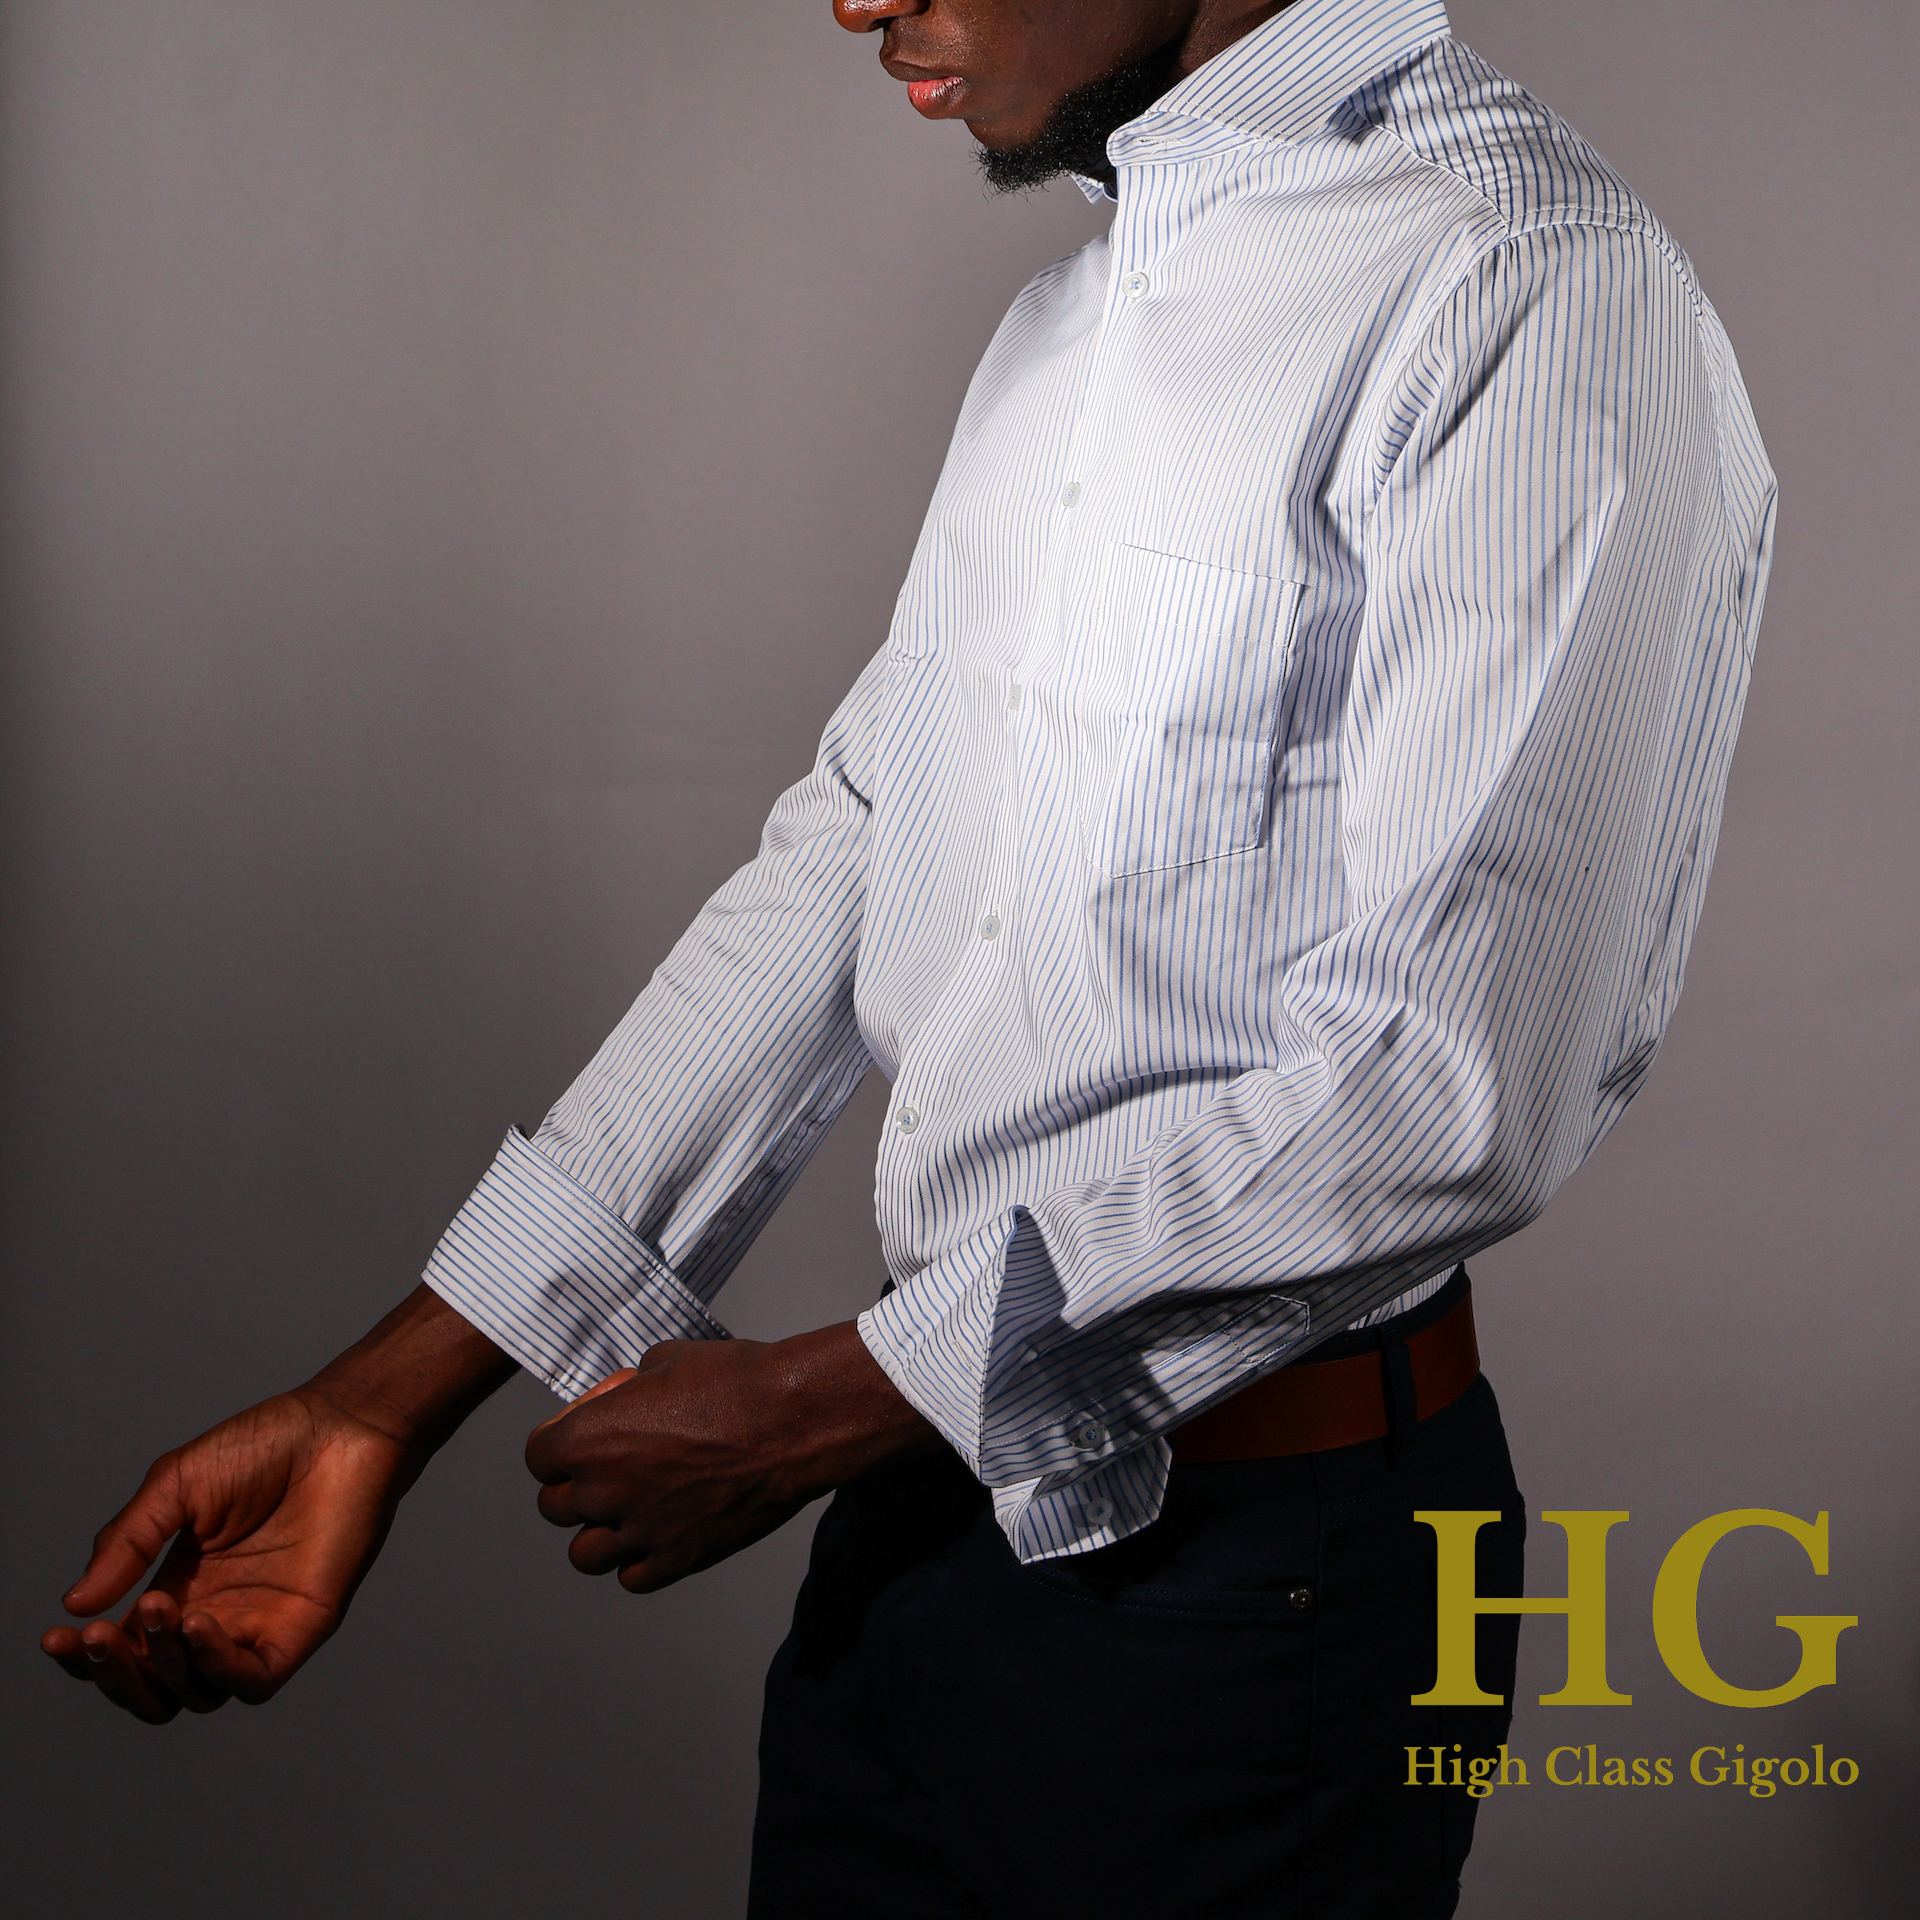 HG - High Class Gigolo